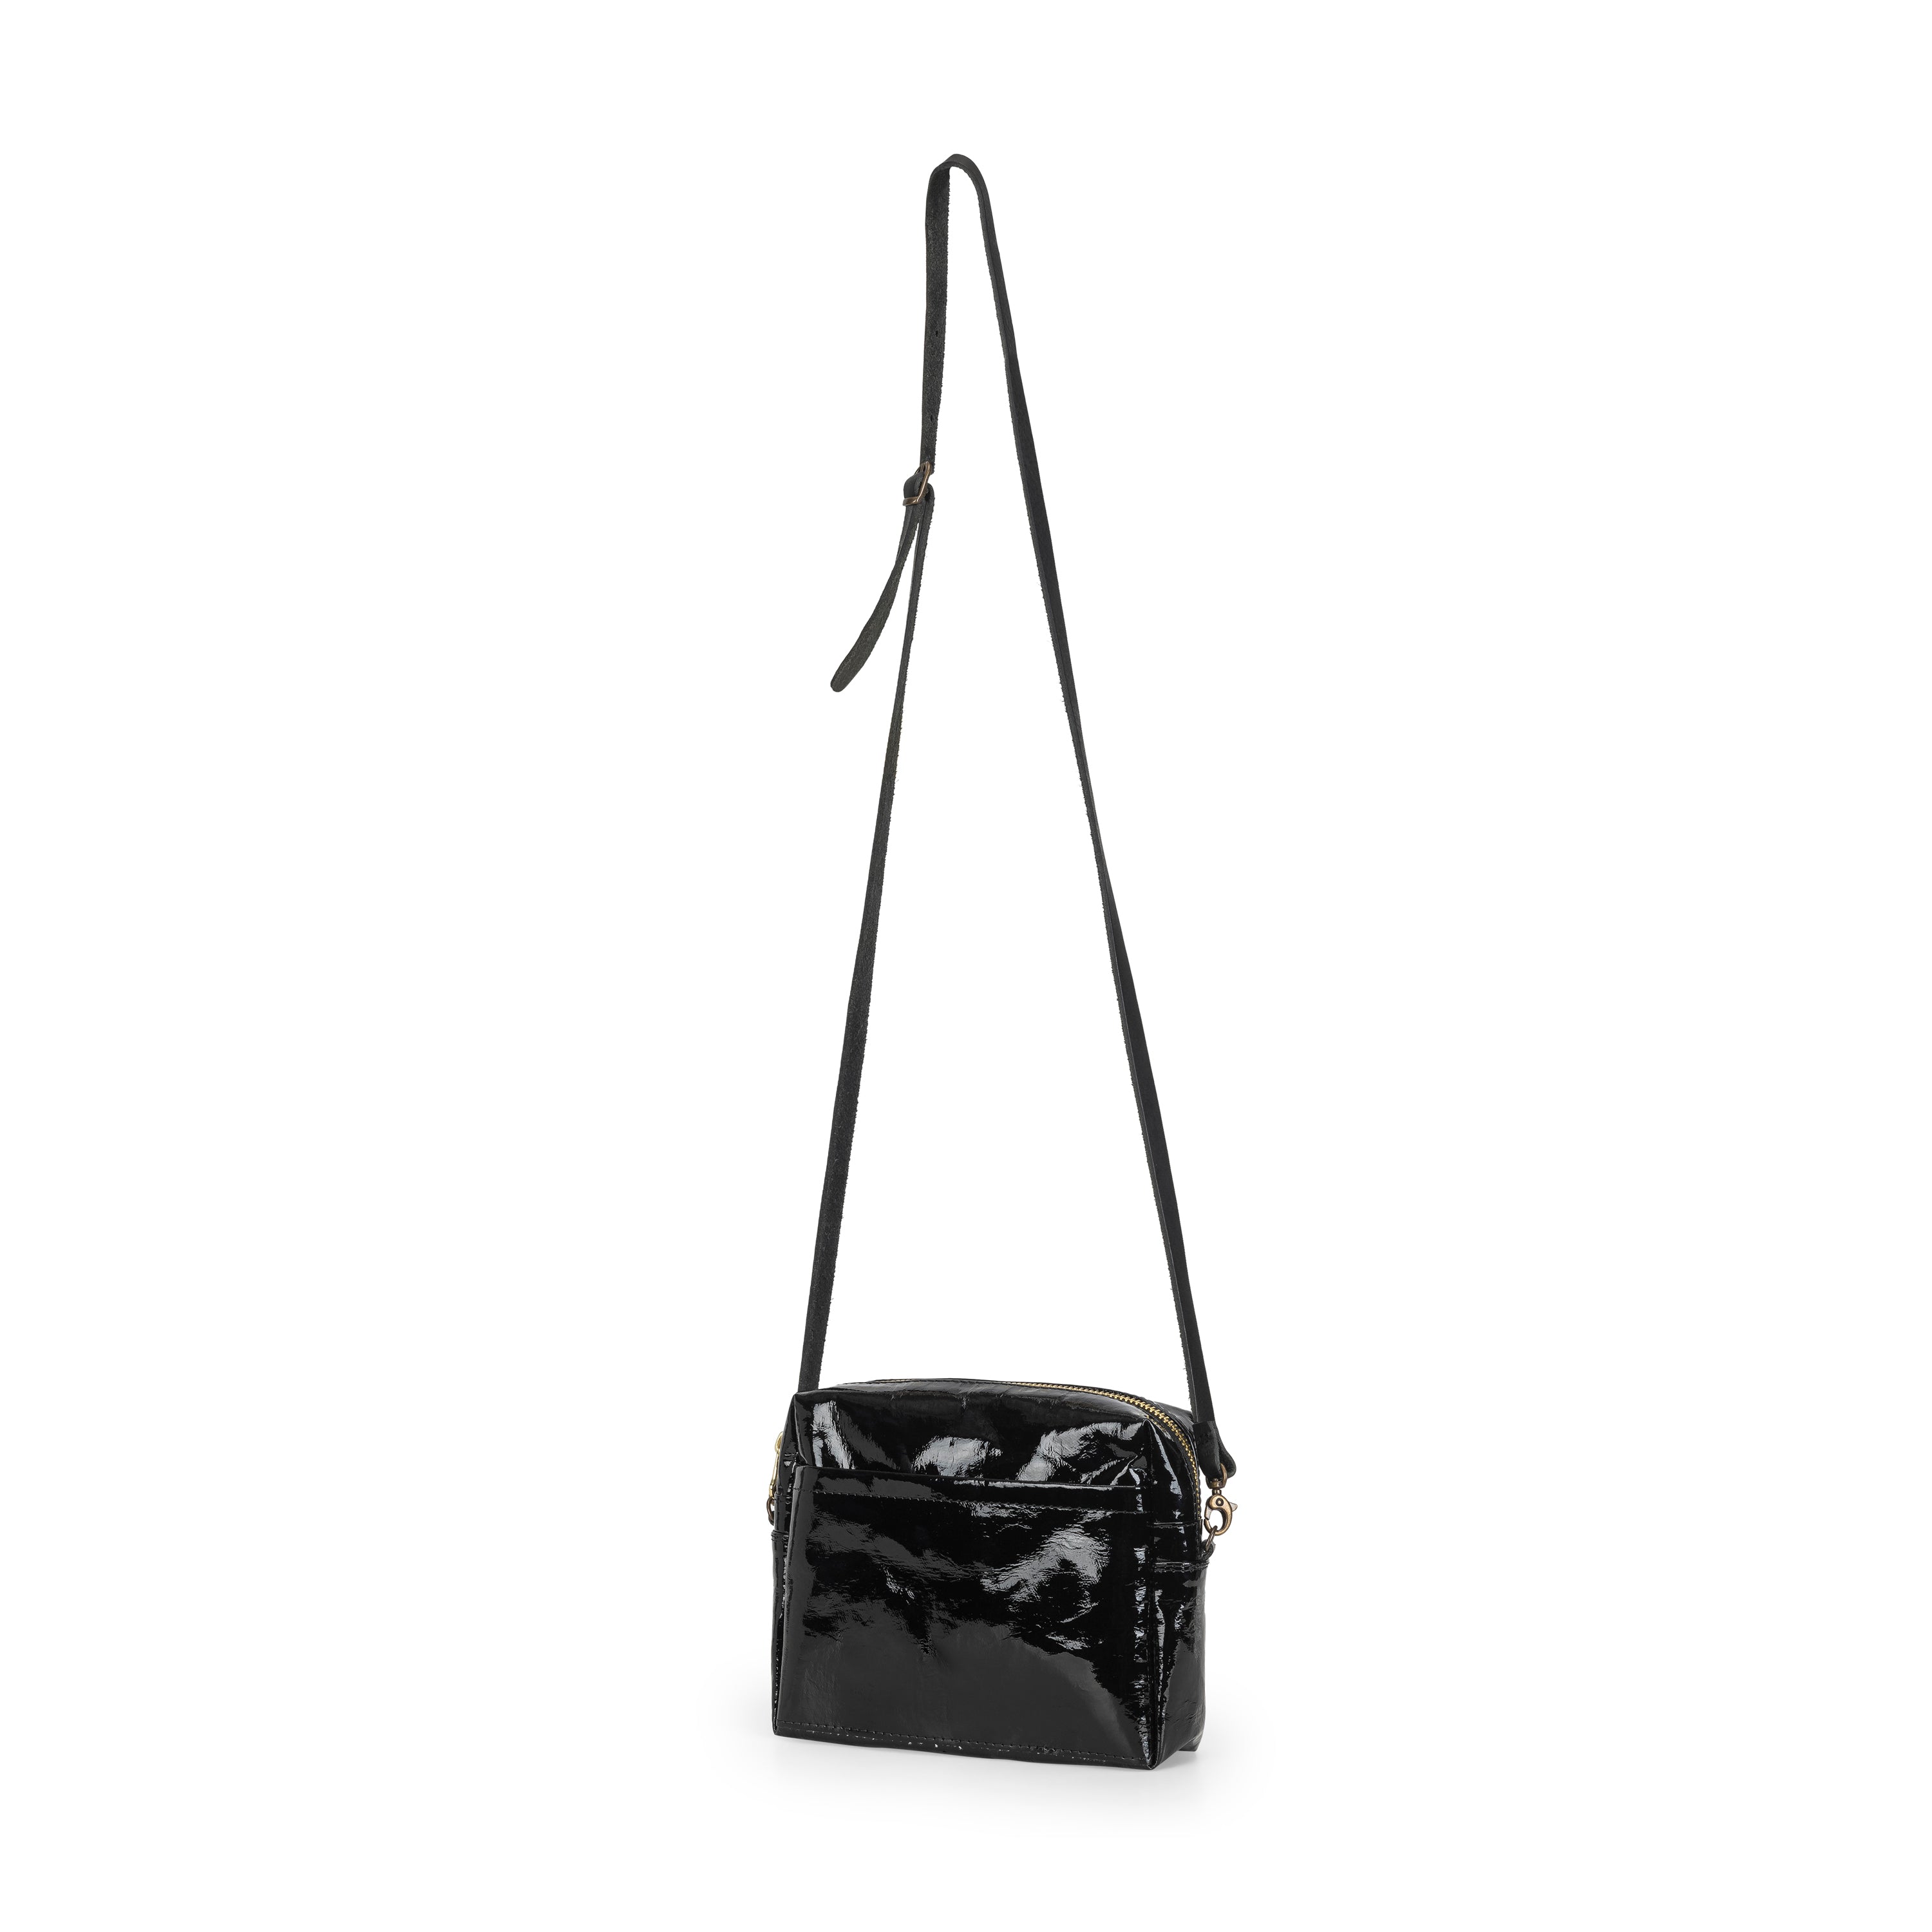 Uashmama Fashionable Crossbody or Clutch Handbag | Vegan, Glossy Black